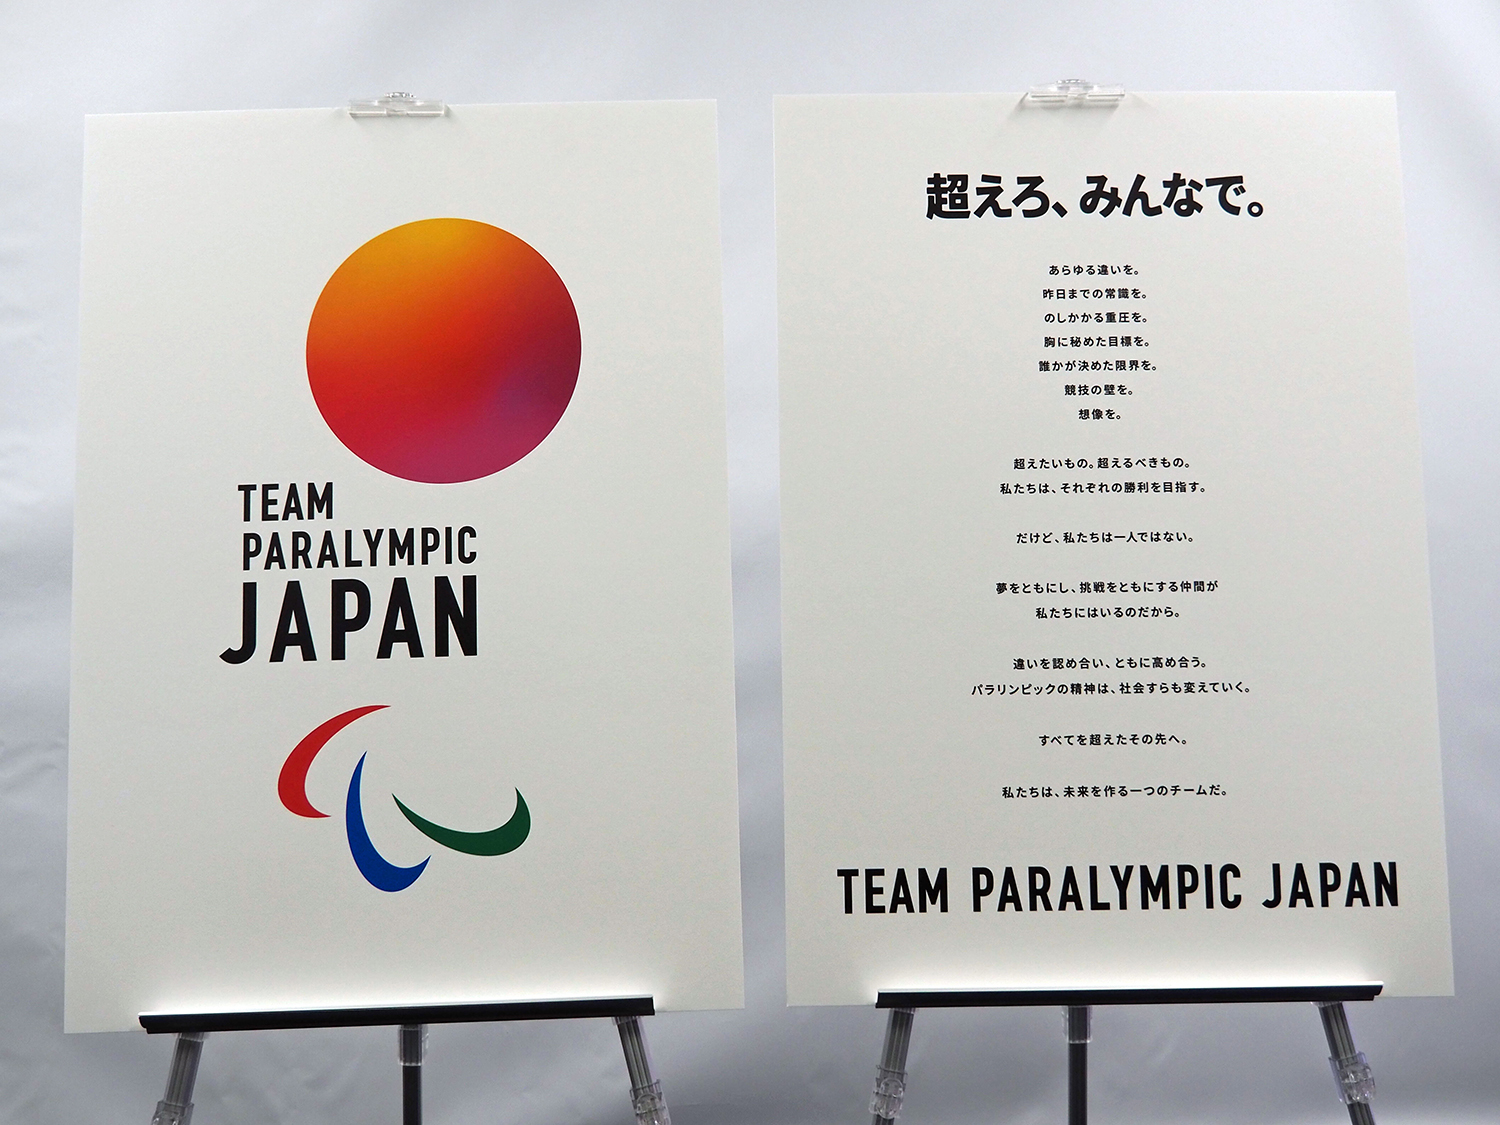 東京パラ開幕まで0日 金個 目指して スローガンは 超えろ みんなで パラスポ Para Spo Plus